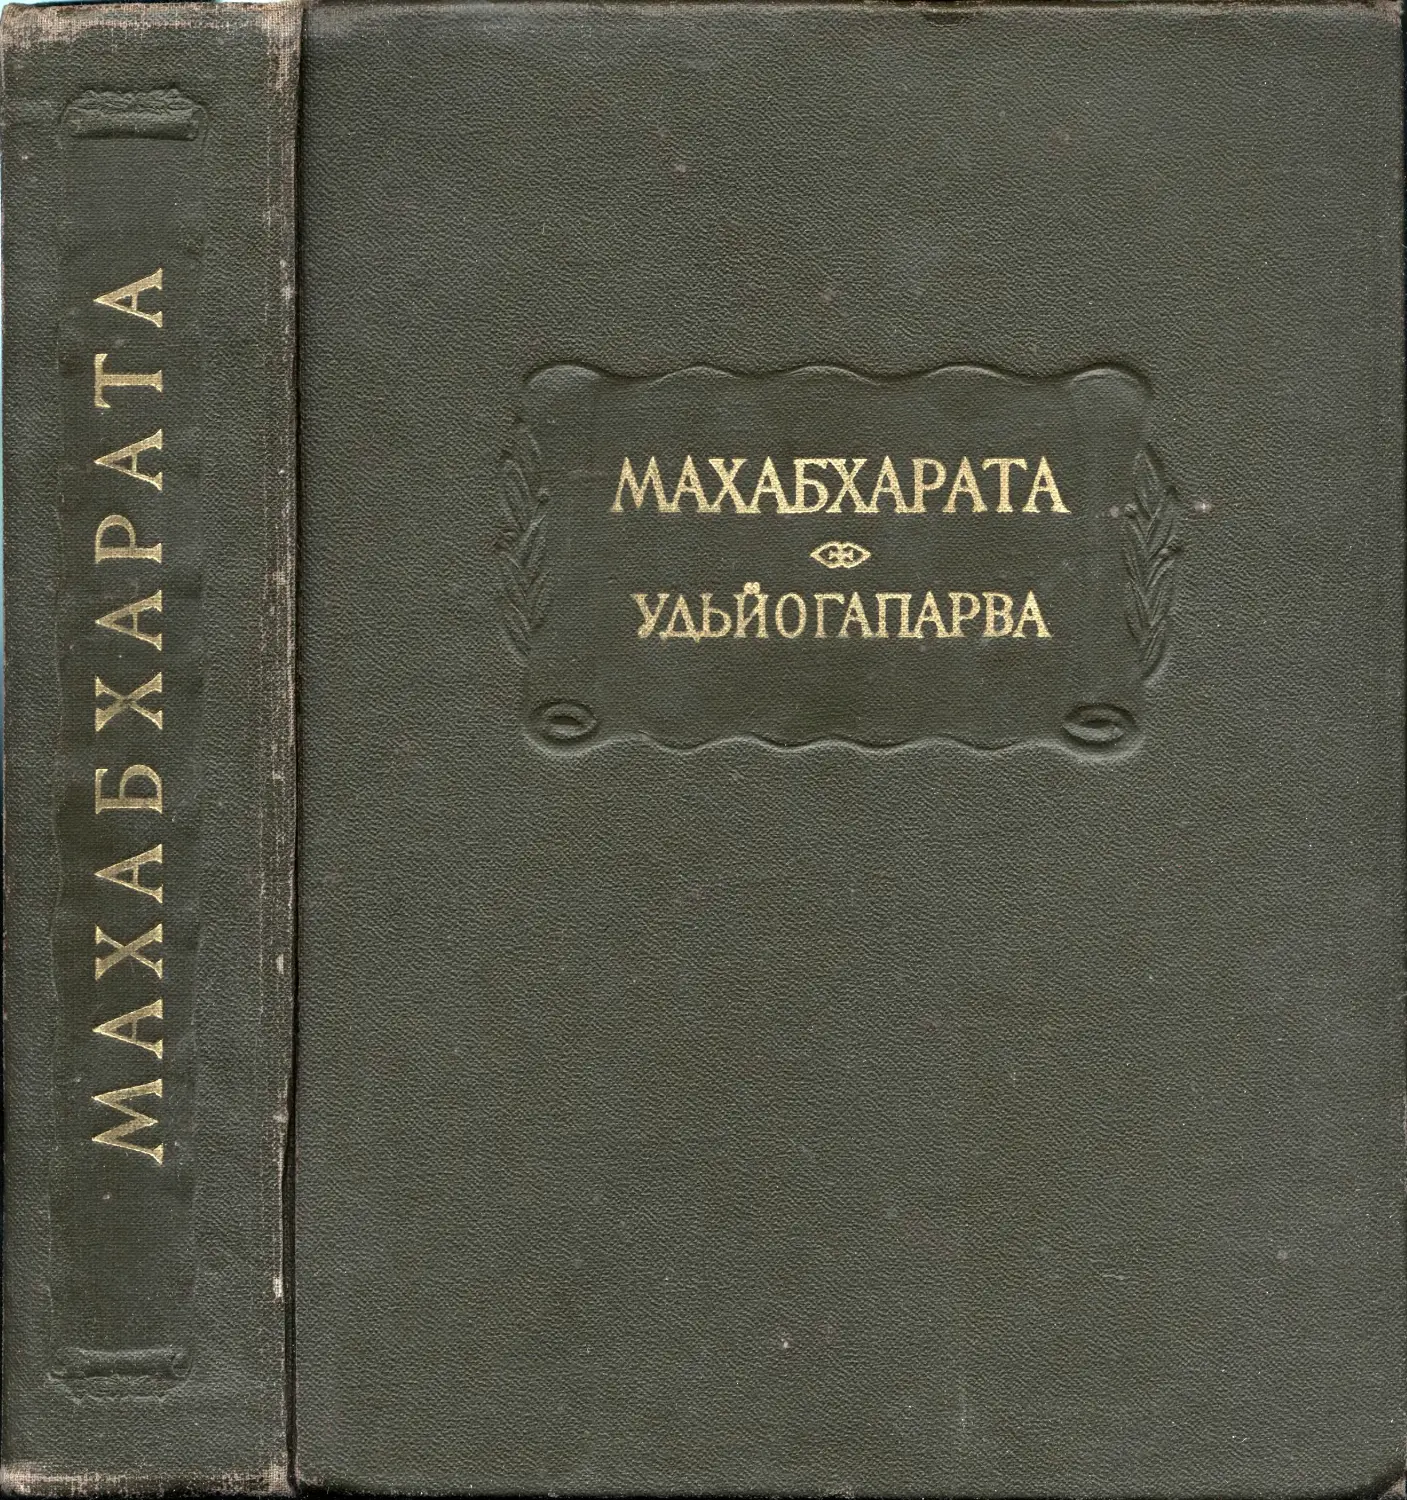 Махабхарата. Книга пятая. Удьйогапарва или Книга о старании – 1976